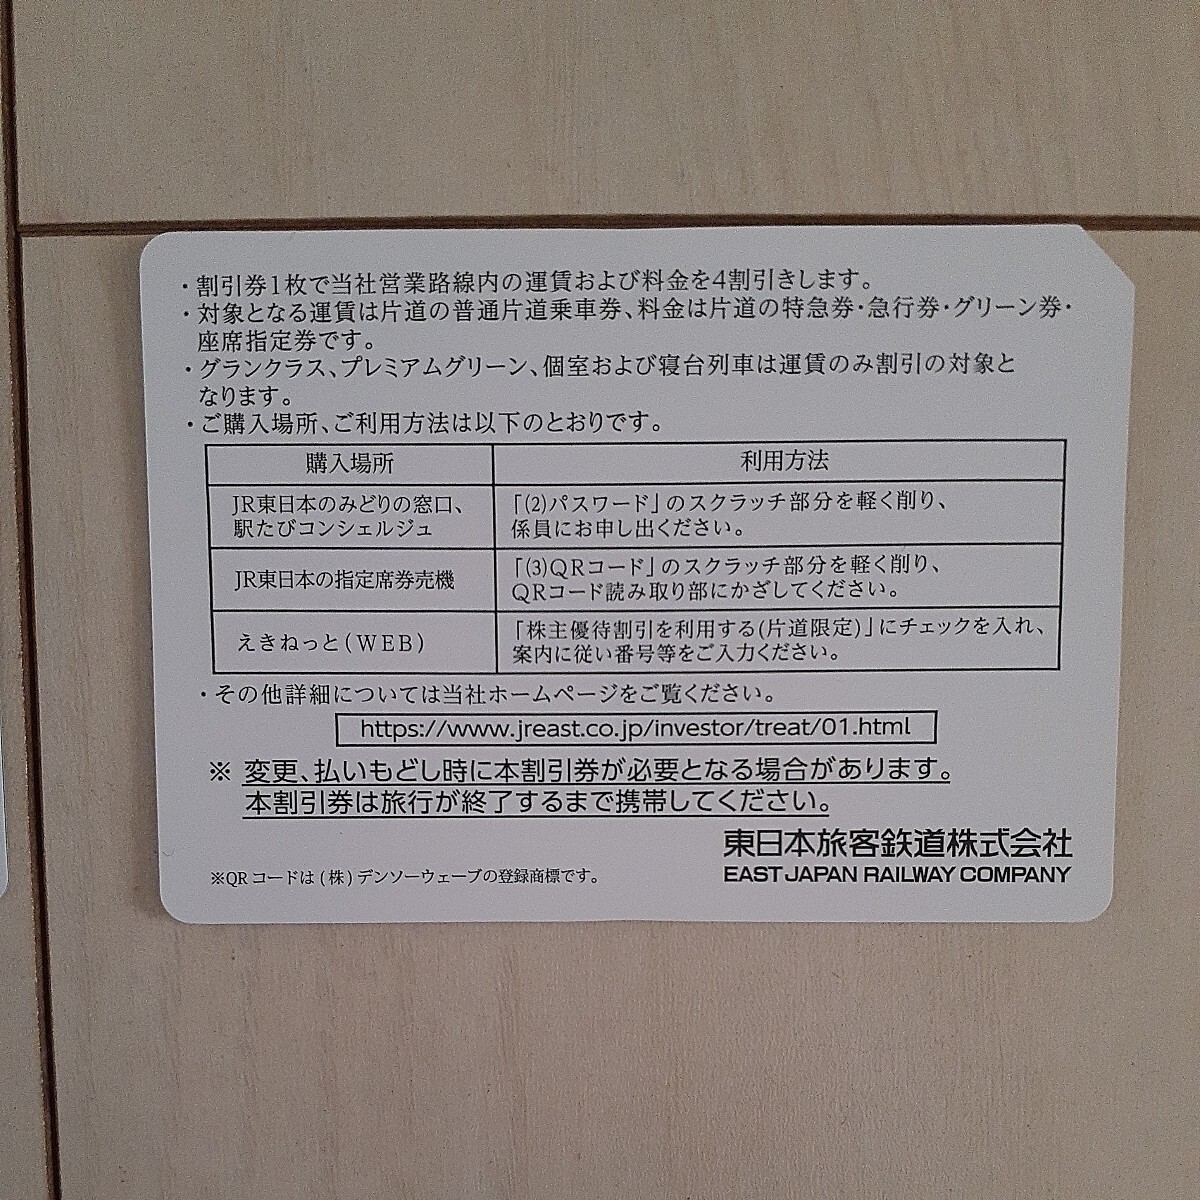 【送料無料】JR東日本株主優待割引券(4割引) 2枚の画像2